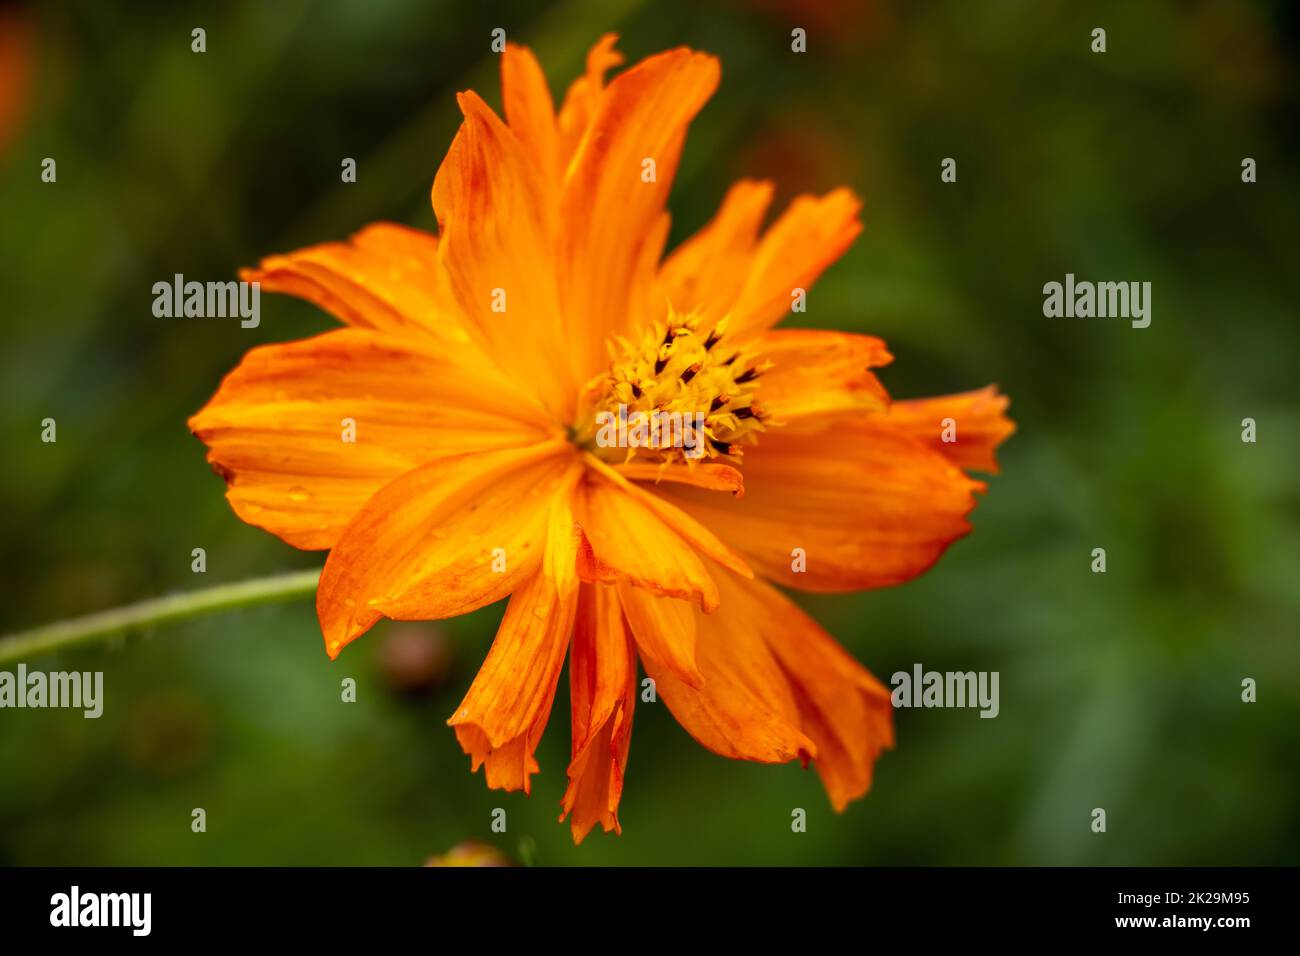 Yellow Cosmos flower (Cosmos sulphureus) in a garden Stock Photo